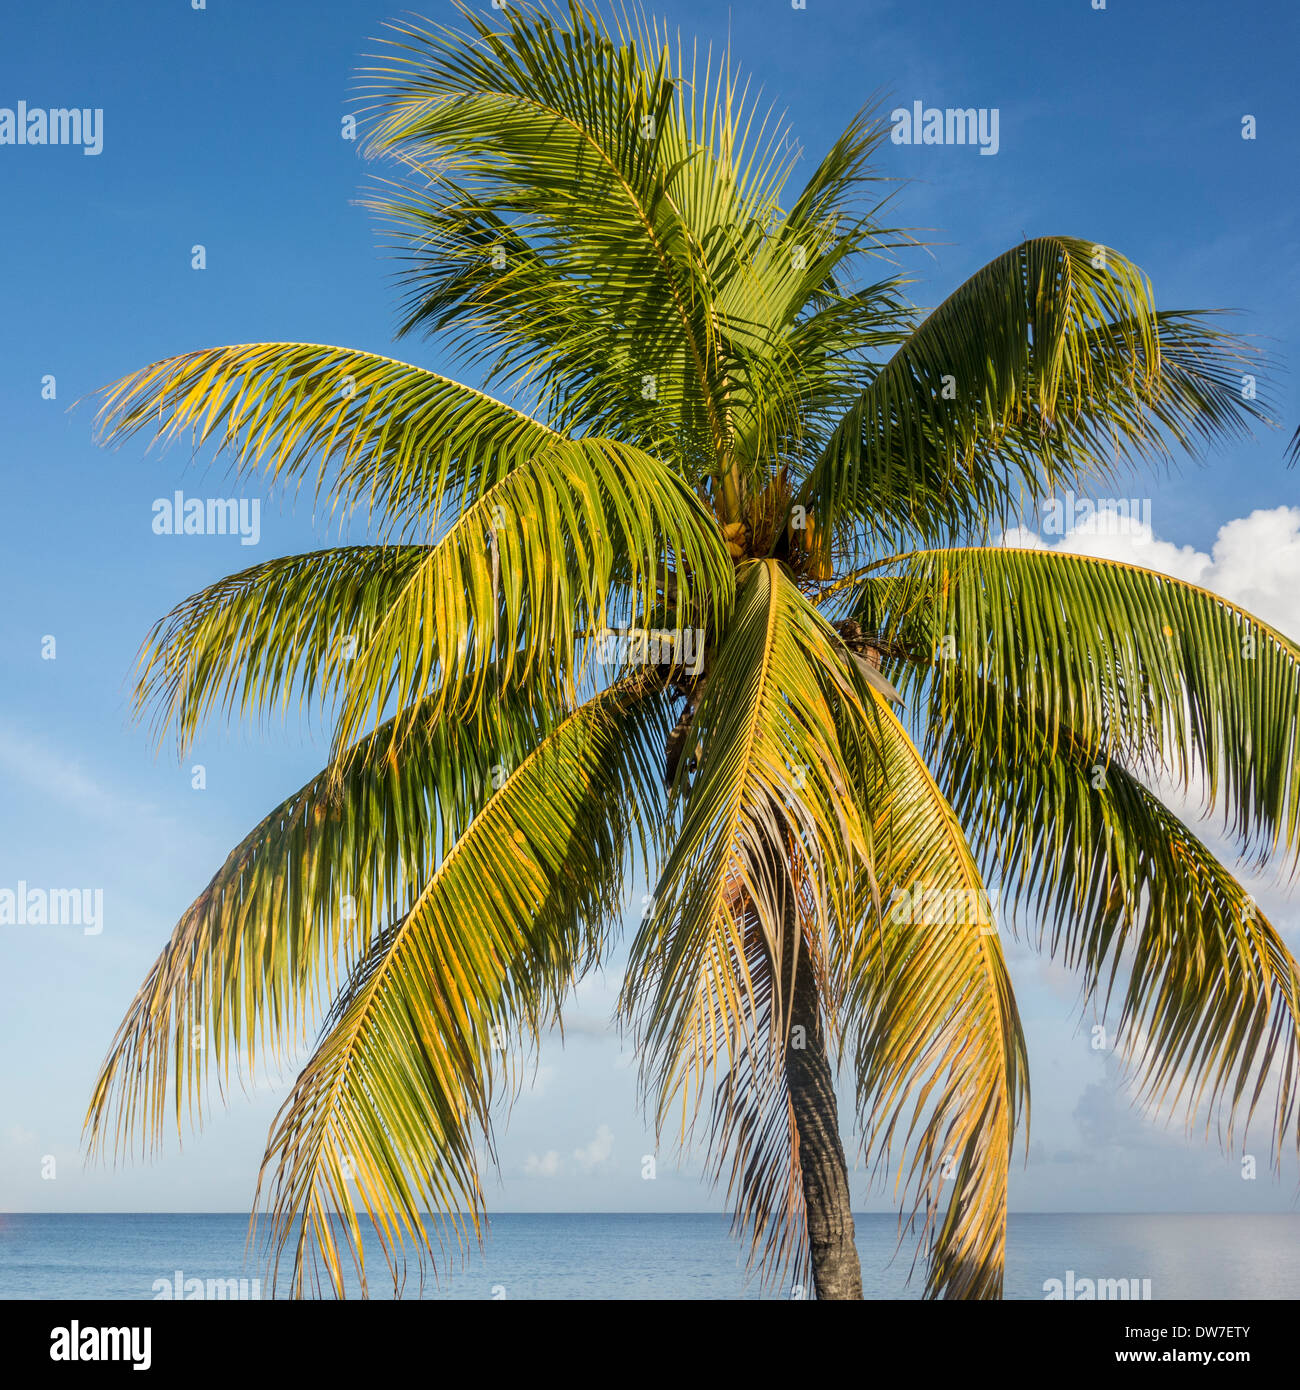 Primo piano della parte superiore di una noce di cocco Palm tree, Cocos nucifera, con frutta contro un cielo blu su St. Croix, U.S. Isole Vergini. Foto Stock